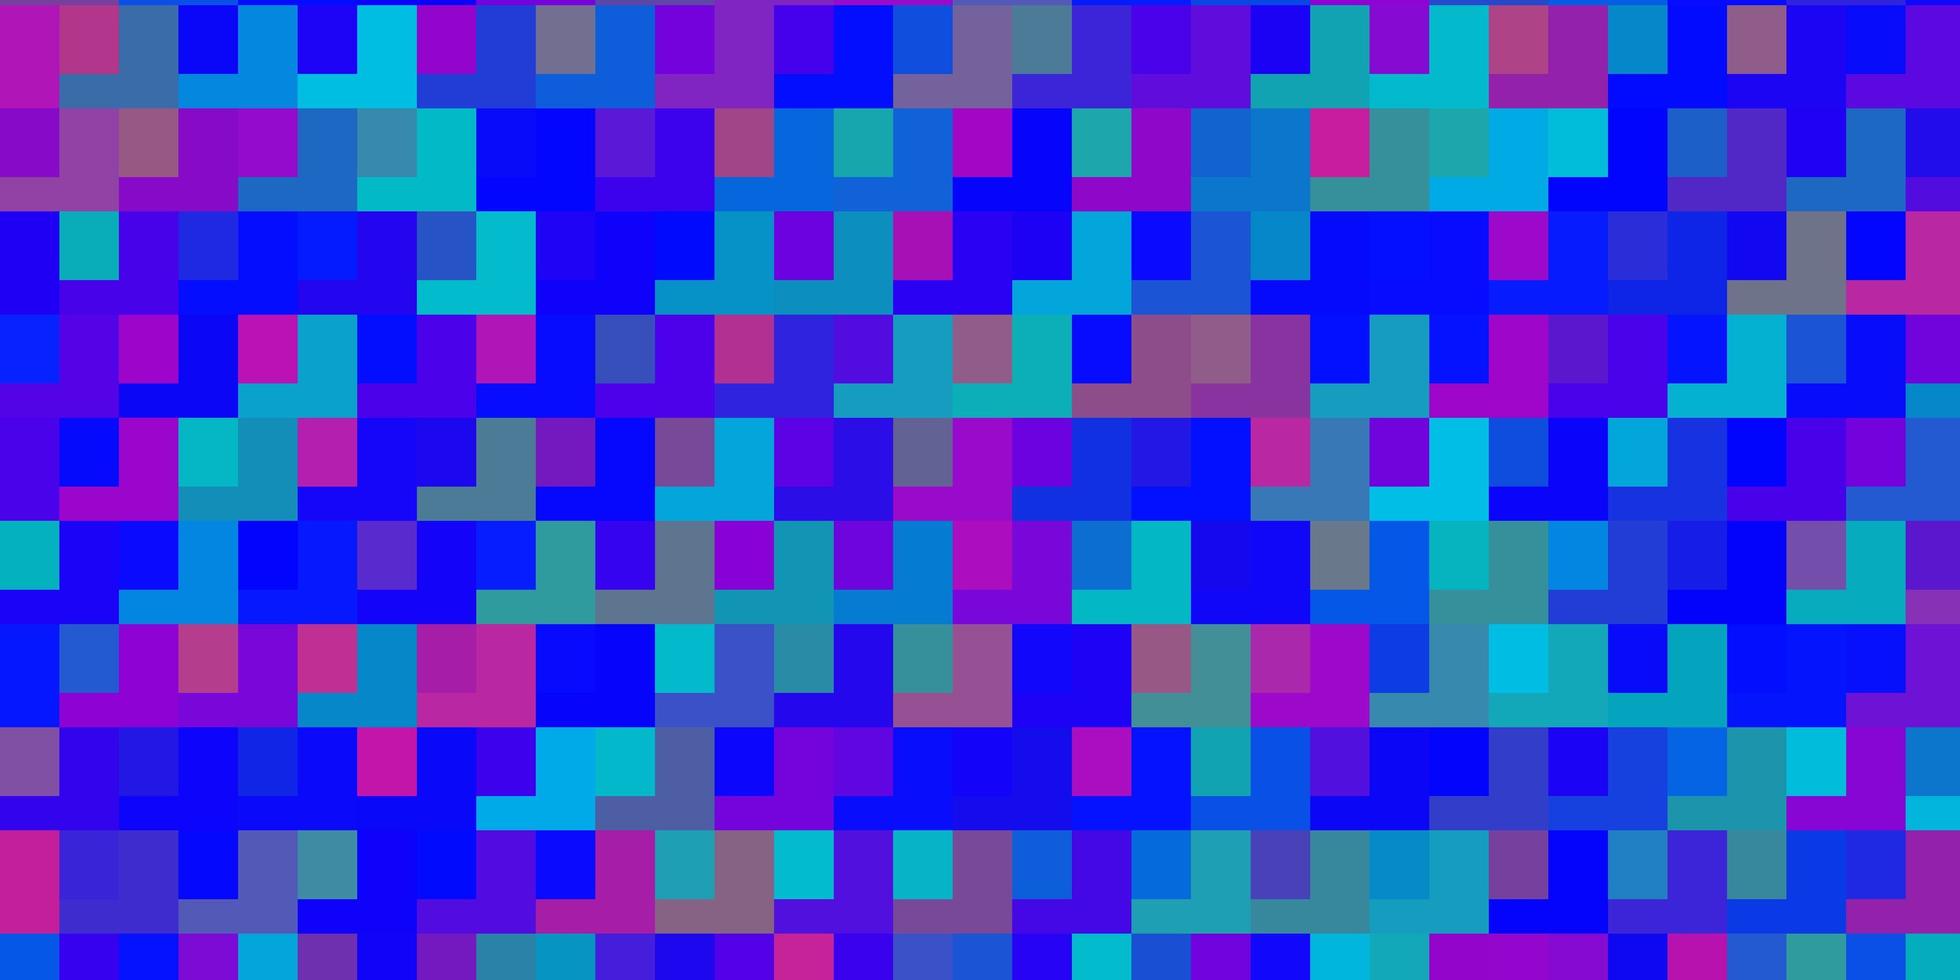 Fondo de vector azul claro, rojo en estilo poligonal. Ilustración de degradado abstracto con rectángulos de colores. plantilla para teléfonos móviles.